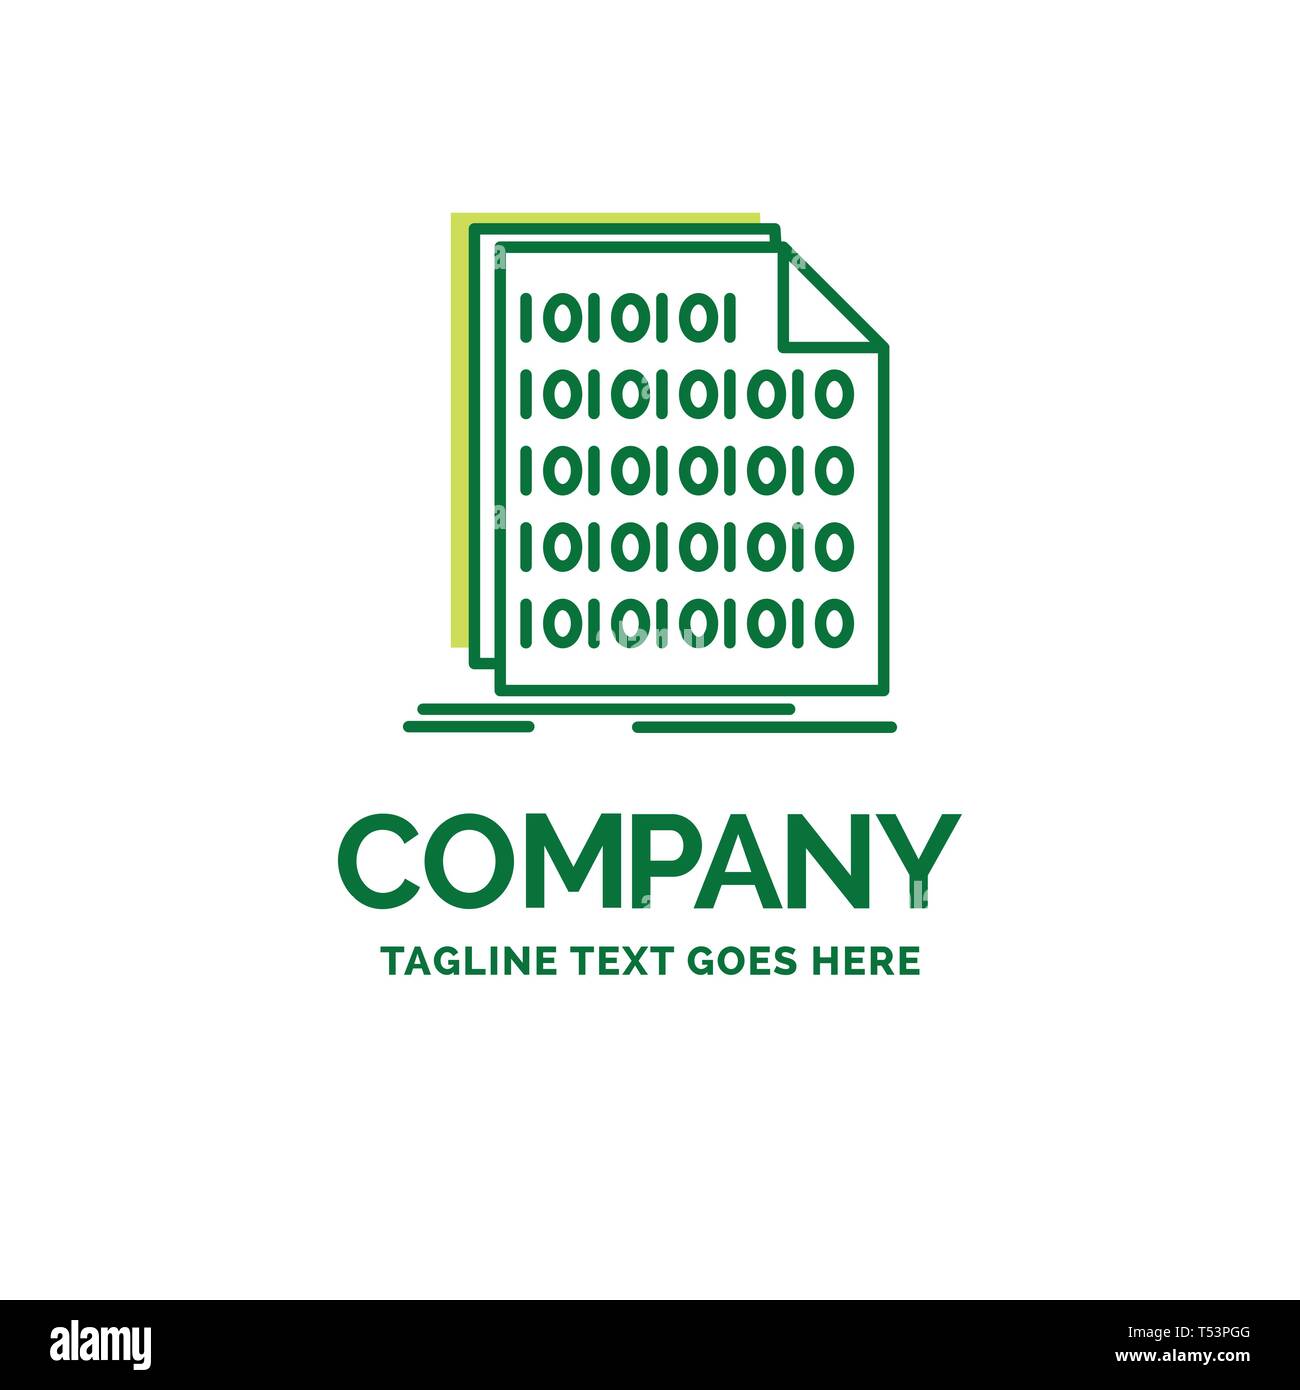 Binario, codice, la codifica dei dati, documento piatto Logo aziendale modello. Creative Green Brand Design Nome. Illustrazione Vettoriale